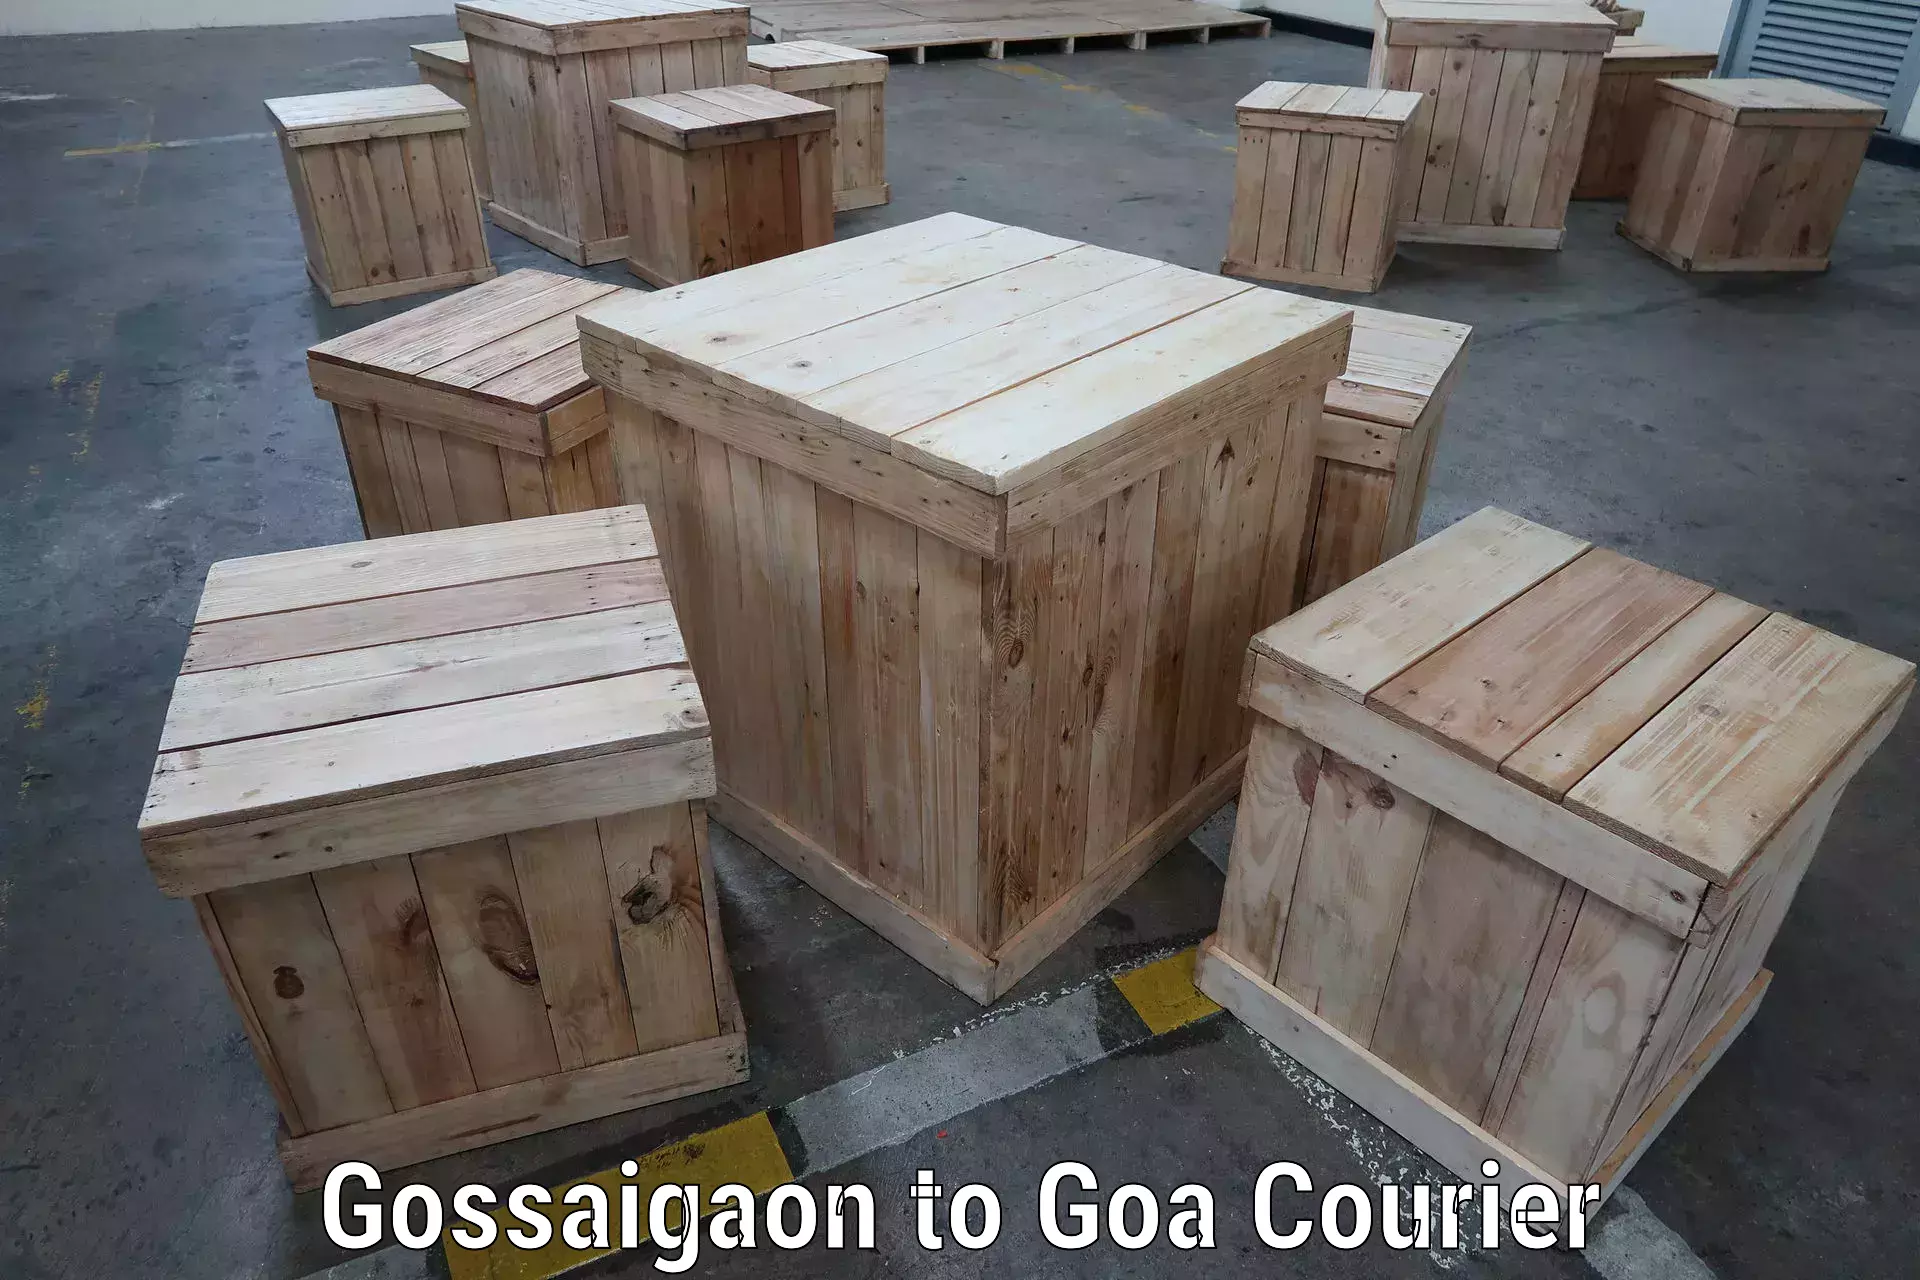 Efficient parcel service Gossaigaon to Goa